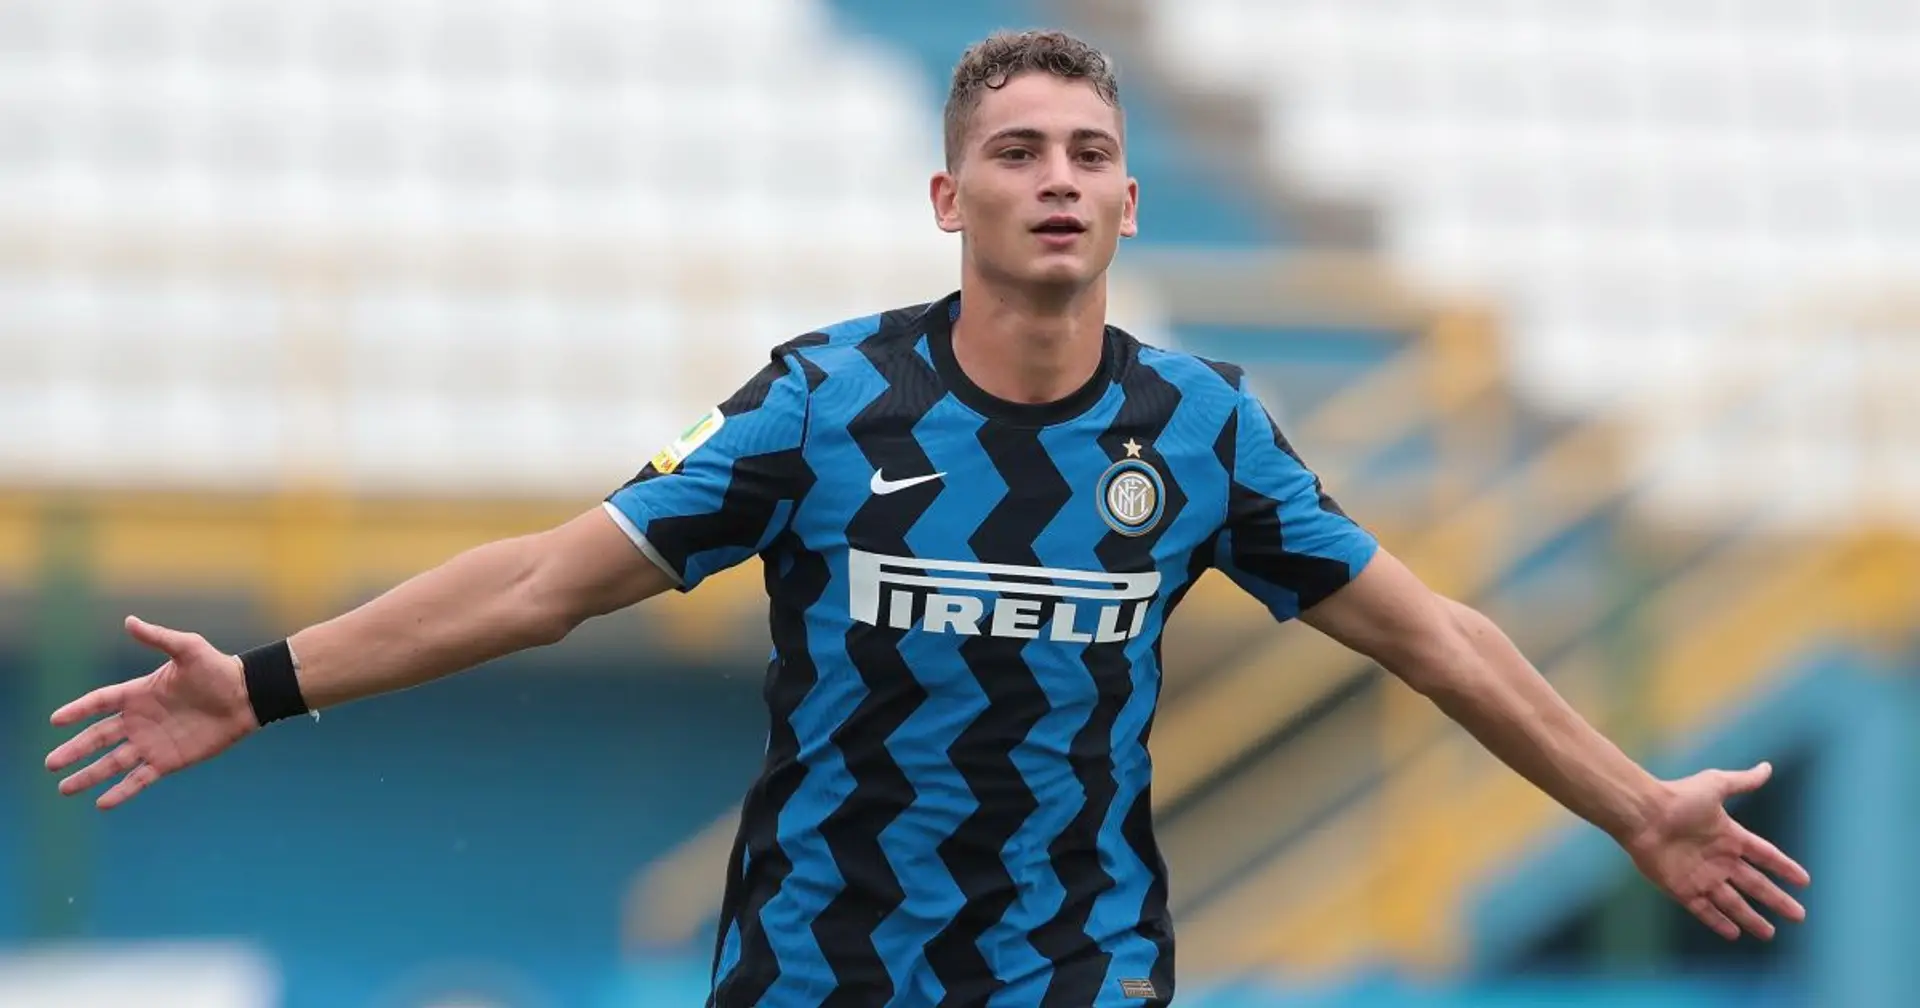 L'Inter pensa ad una nuova destinazione per Esposito: l'attaccante lascerà la Spal (attendibilità: 5 stelle)